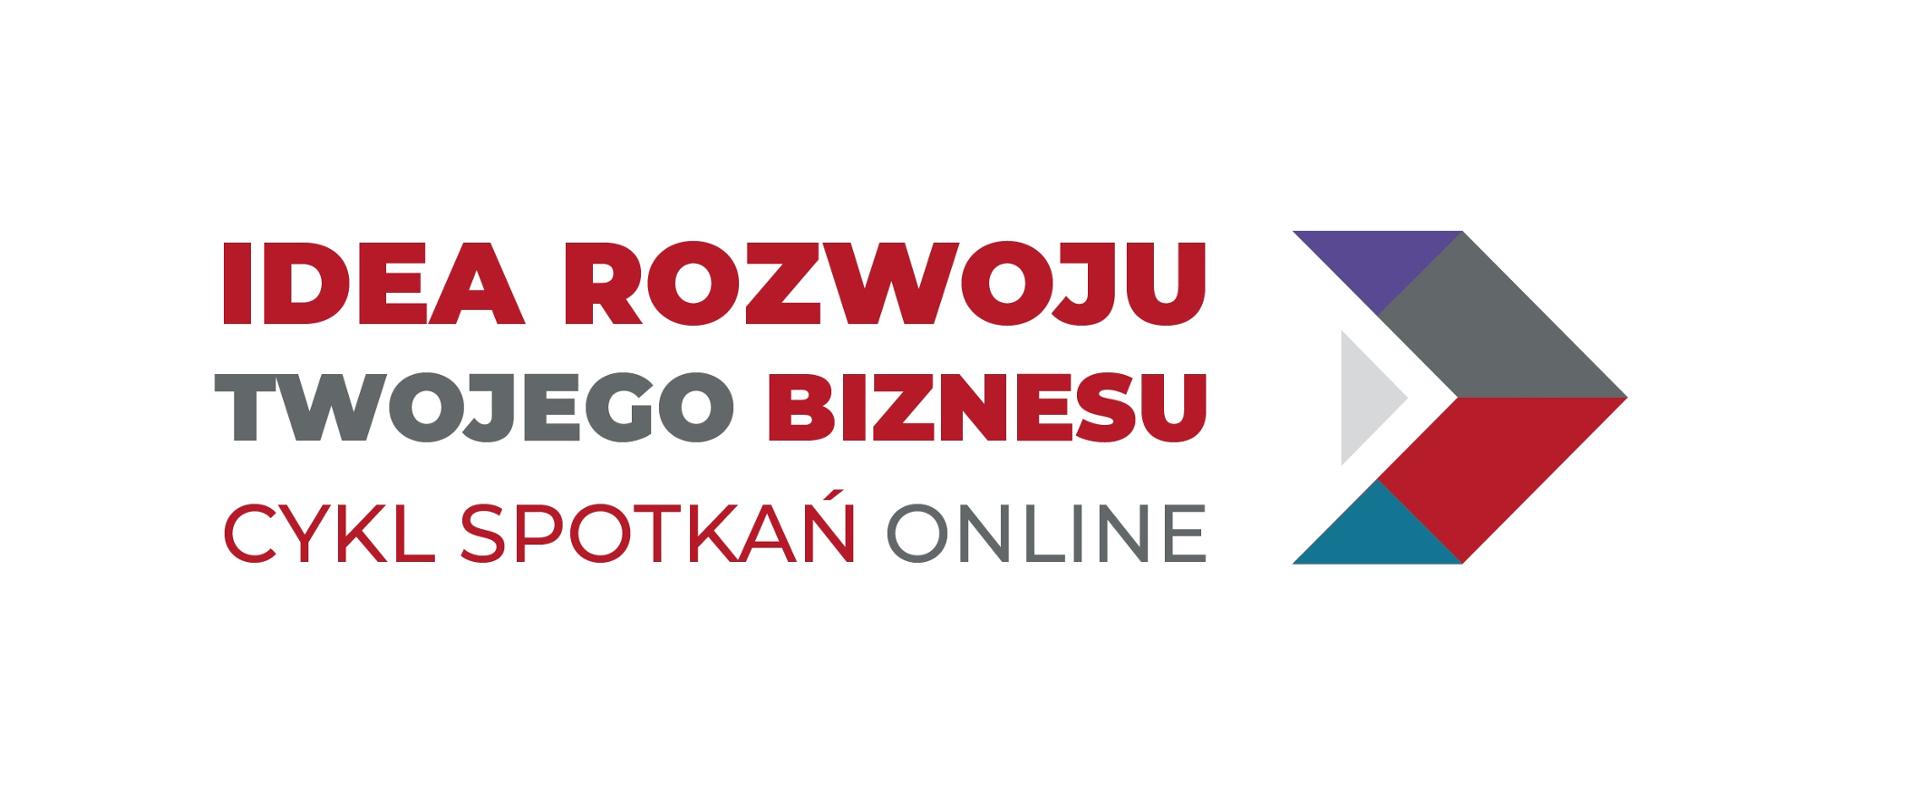 Logo cyklu spotkań dla przedsięborców, które organizuje Polska Agencja Rozwoju Przedsiębiorczości.